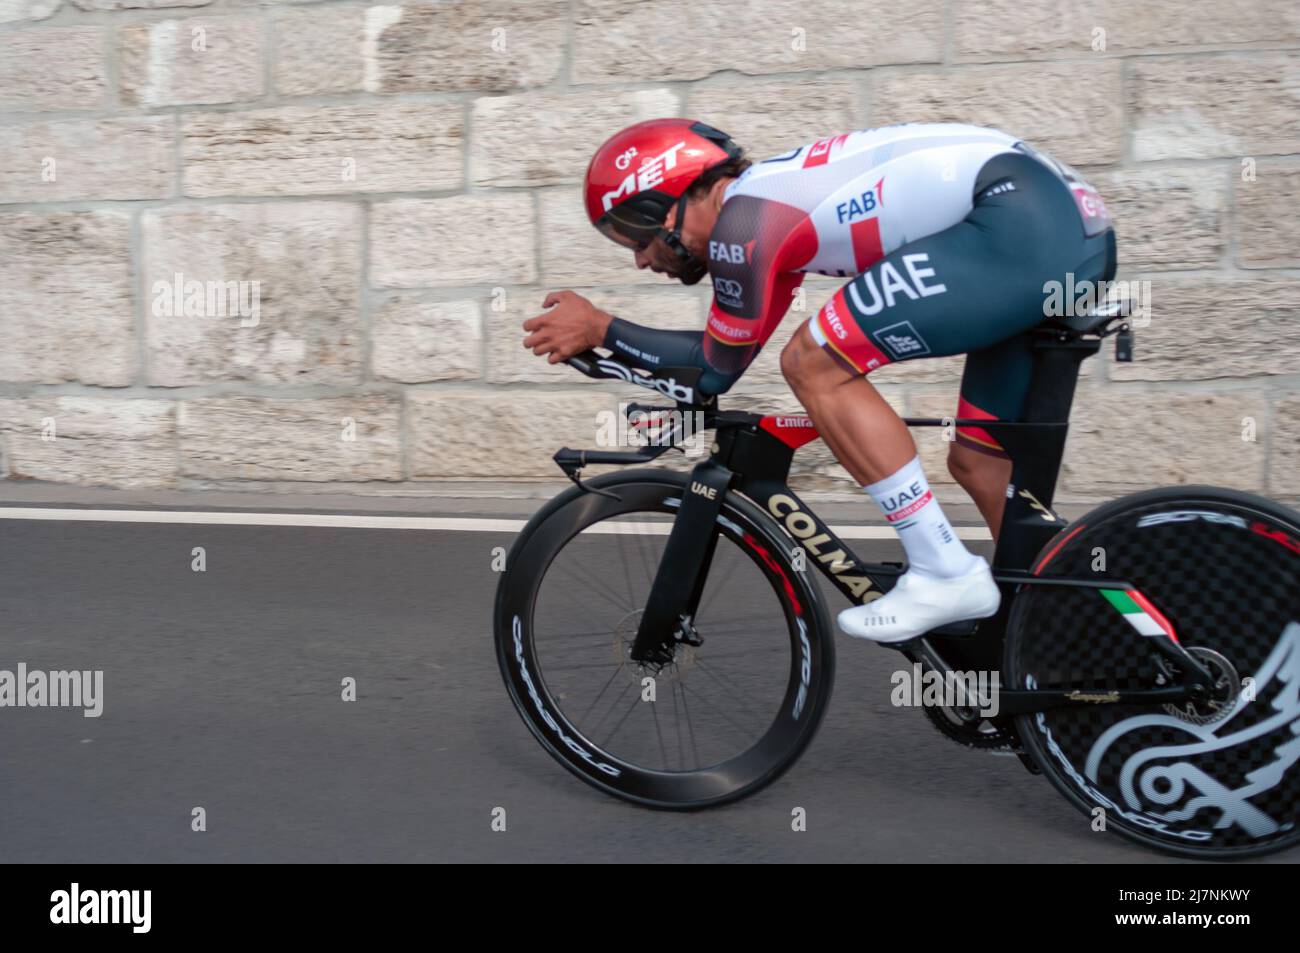 BUDAPEST, UNGARN - 07. MAI 2022: Profi-Radfahrer Fernando Gaviria UAE TEAM EMIRATES Giro D'Italia Etappe 2 Zeitfahren - Radrennen am 07. Mai 202 Stockfoto